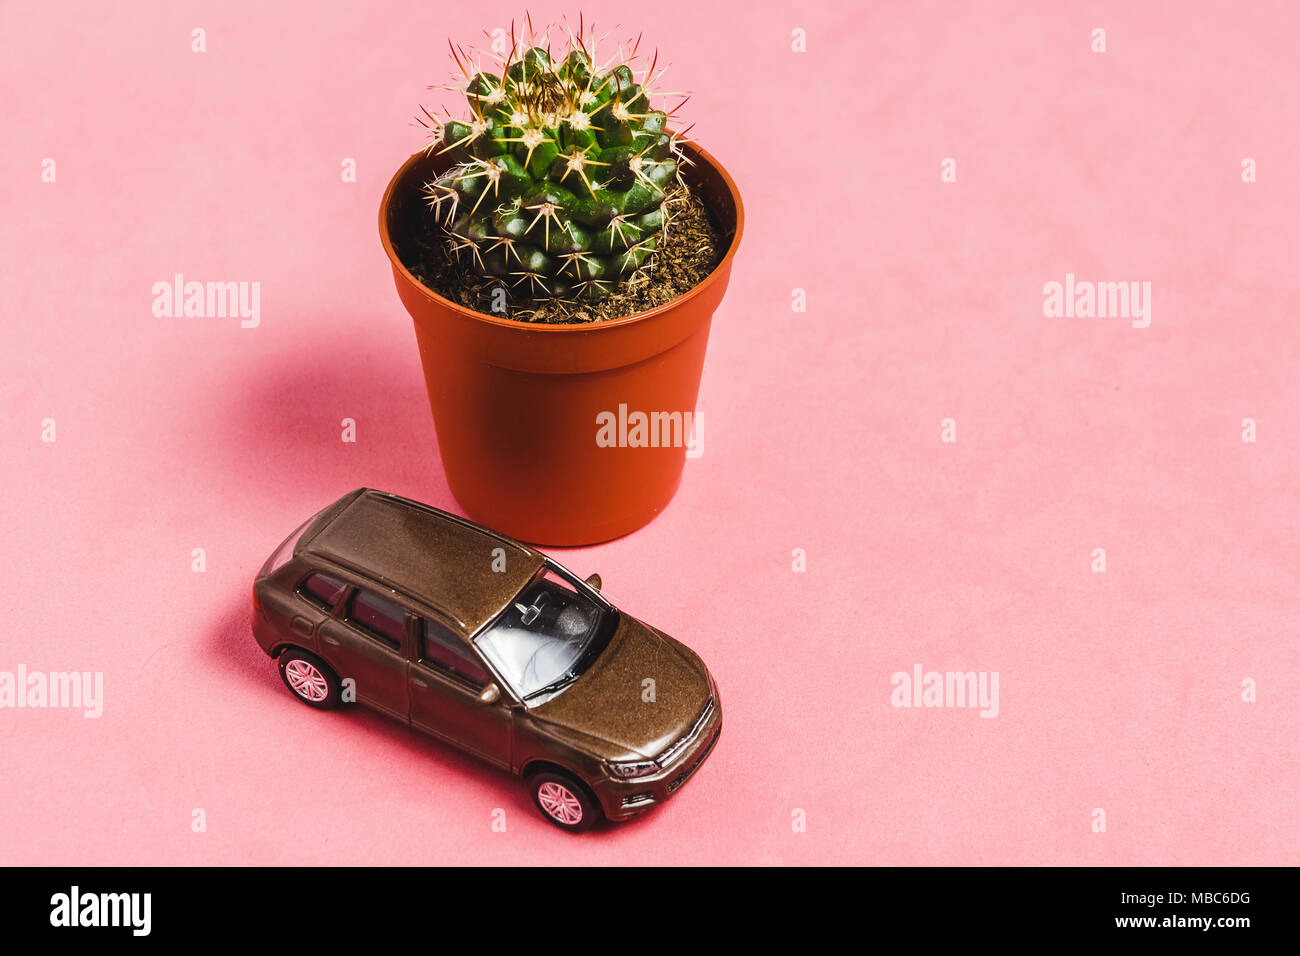 Cactus en gros plan Vase marron avec voiture modèle rose sur Backgrounf. Droit pour la Nature, personne, l'été, Jardin Concept. Banque D'Images